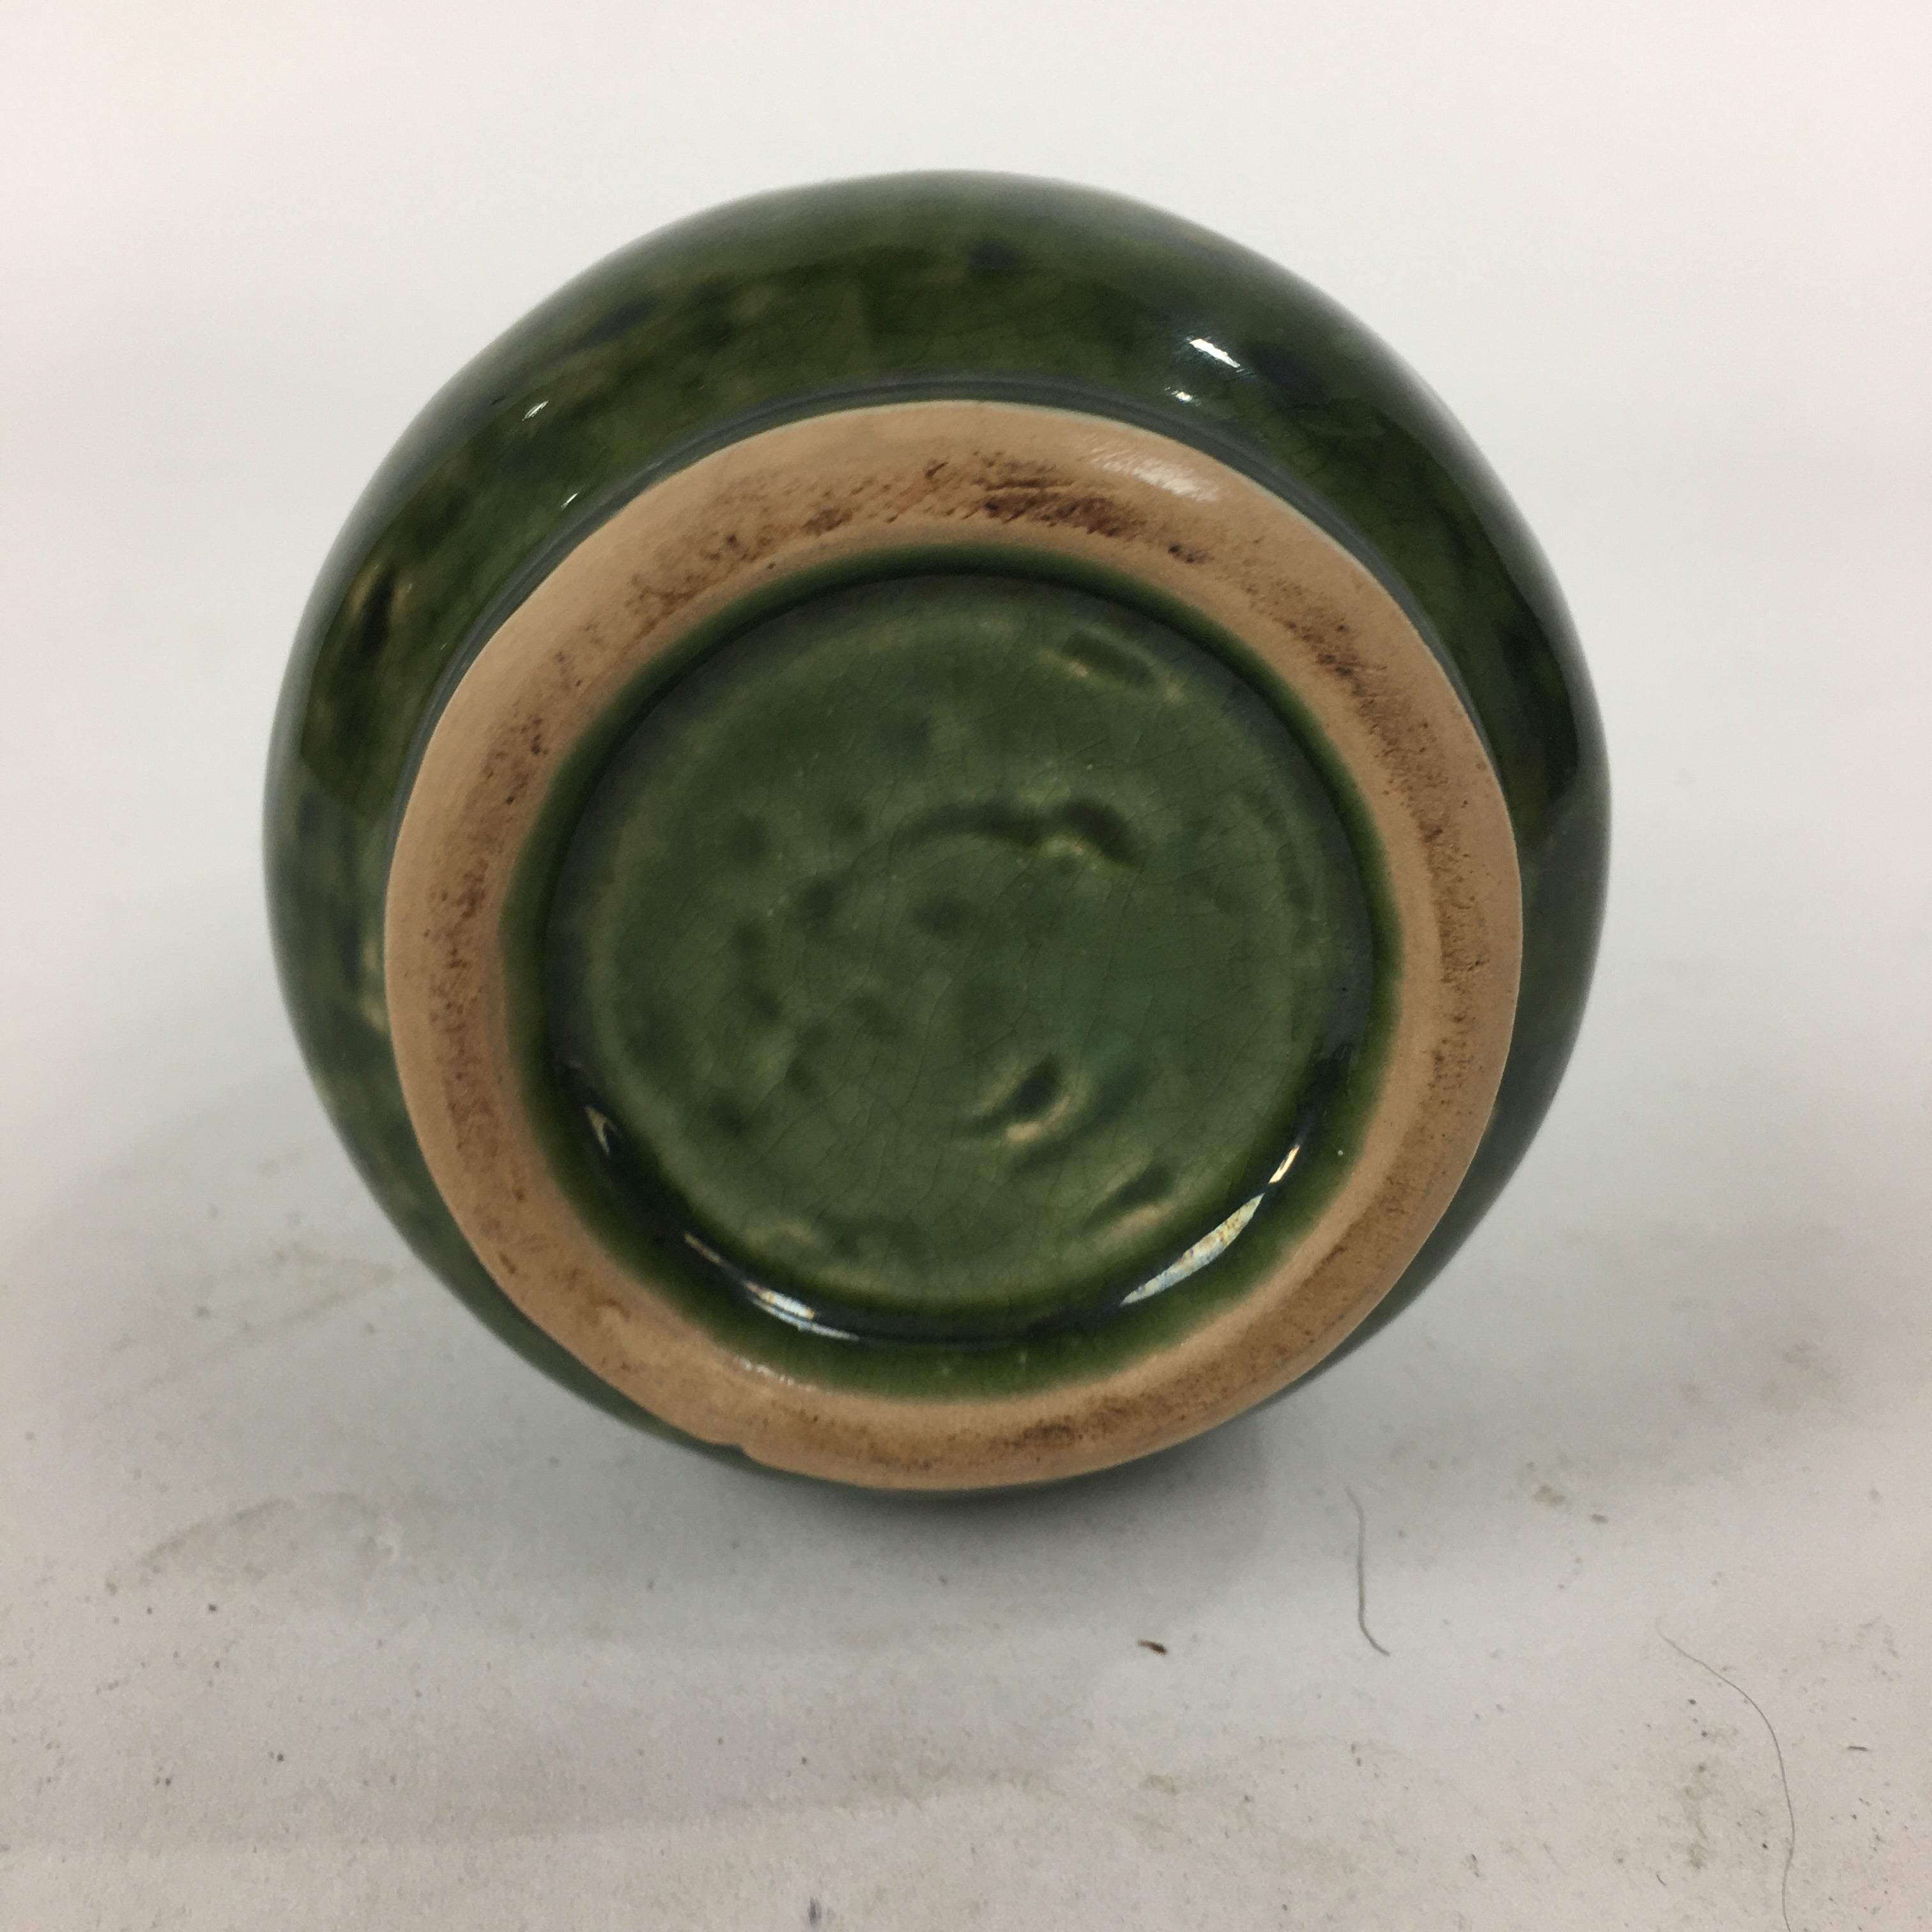 Japanese Ceramic Sake Bottle Vtg Pottery Yakimono Green Tokkuri TS334